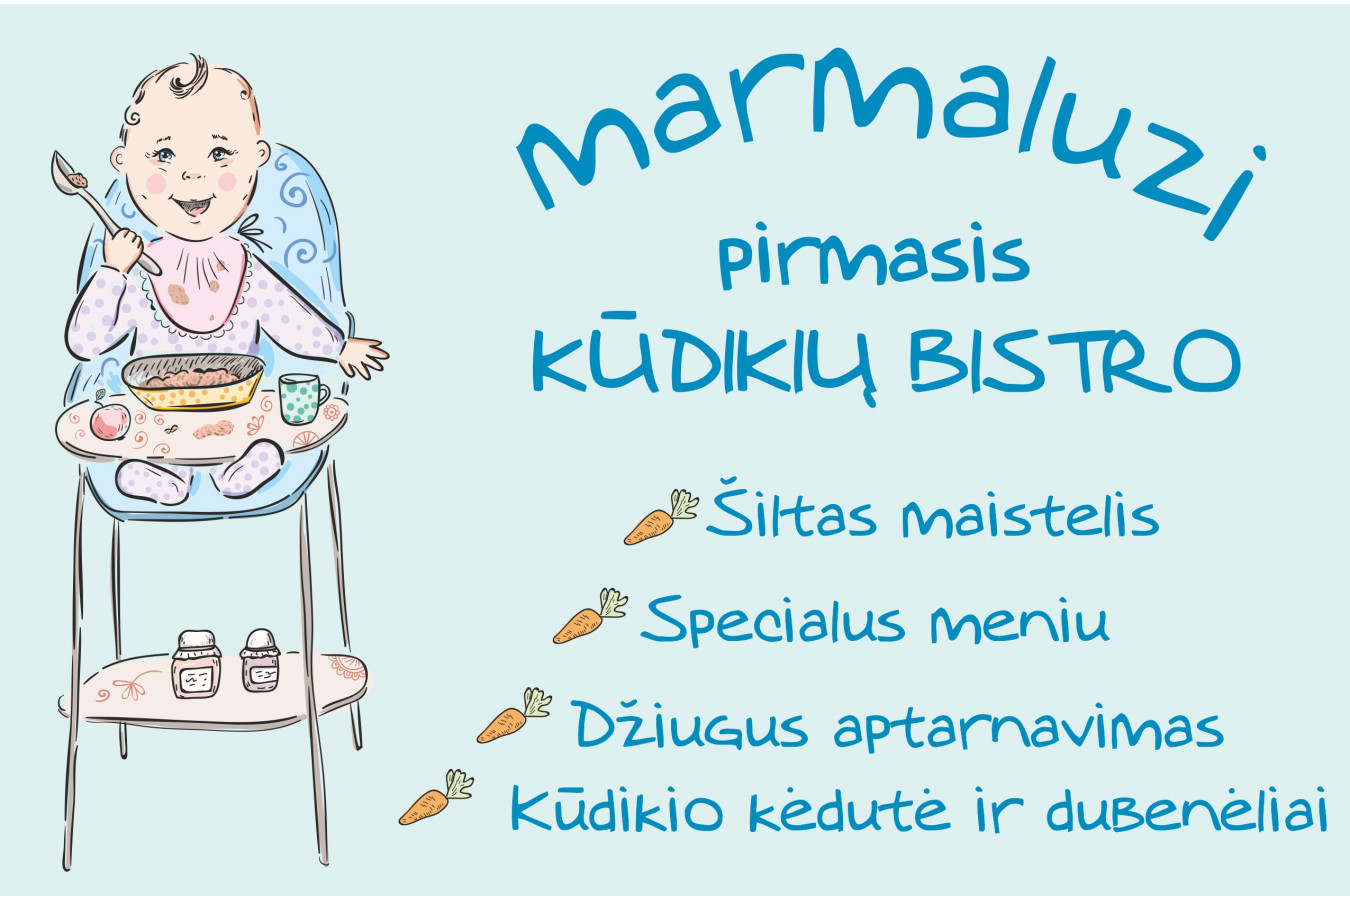 Pirmoji KŪDIKIŲ BISTRO - Marmaluzi kviečia kūdikėlius apsilankyti Vilniuje.